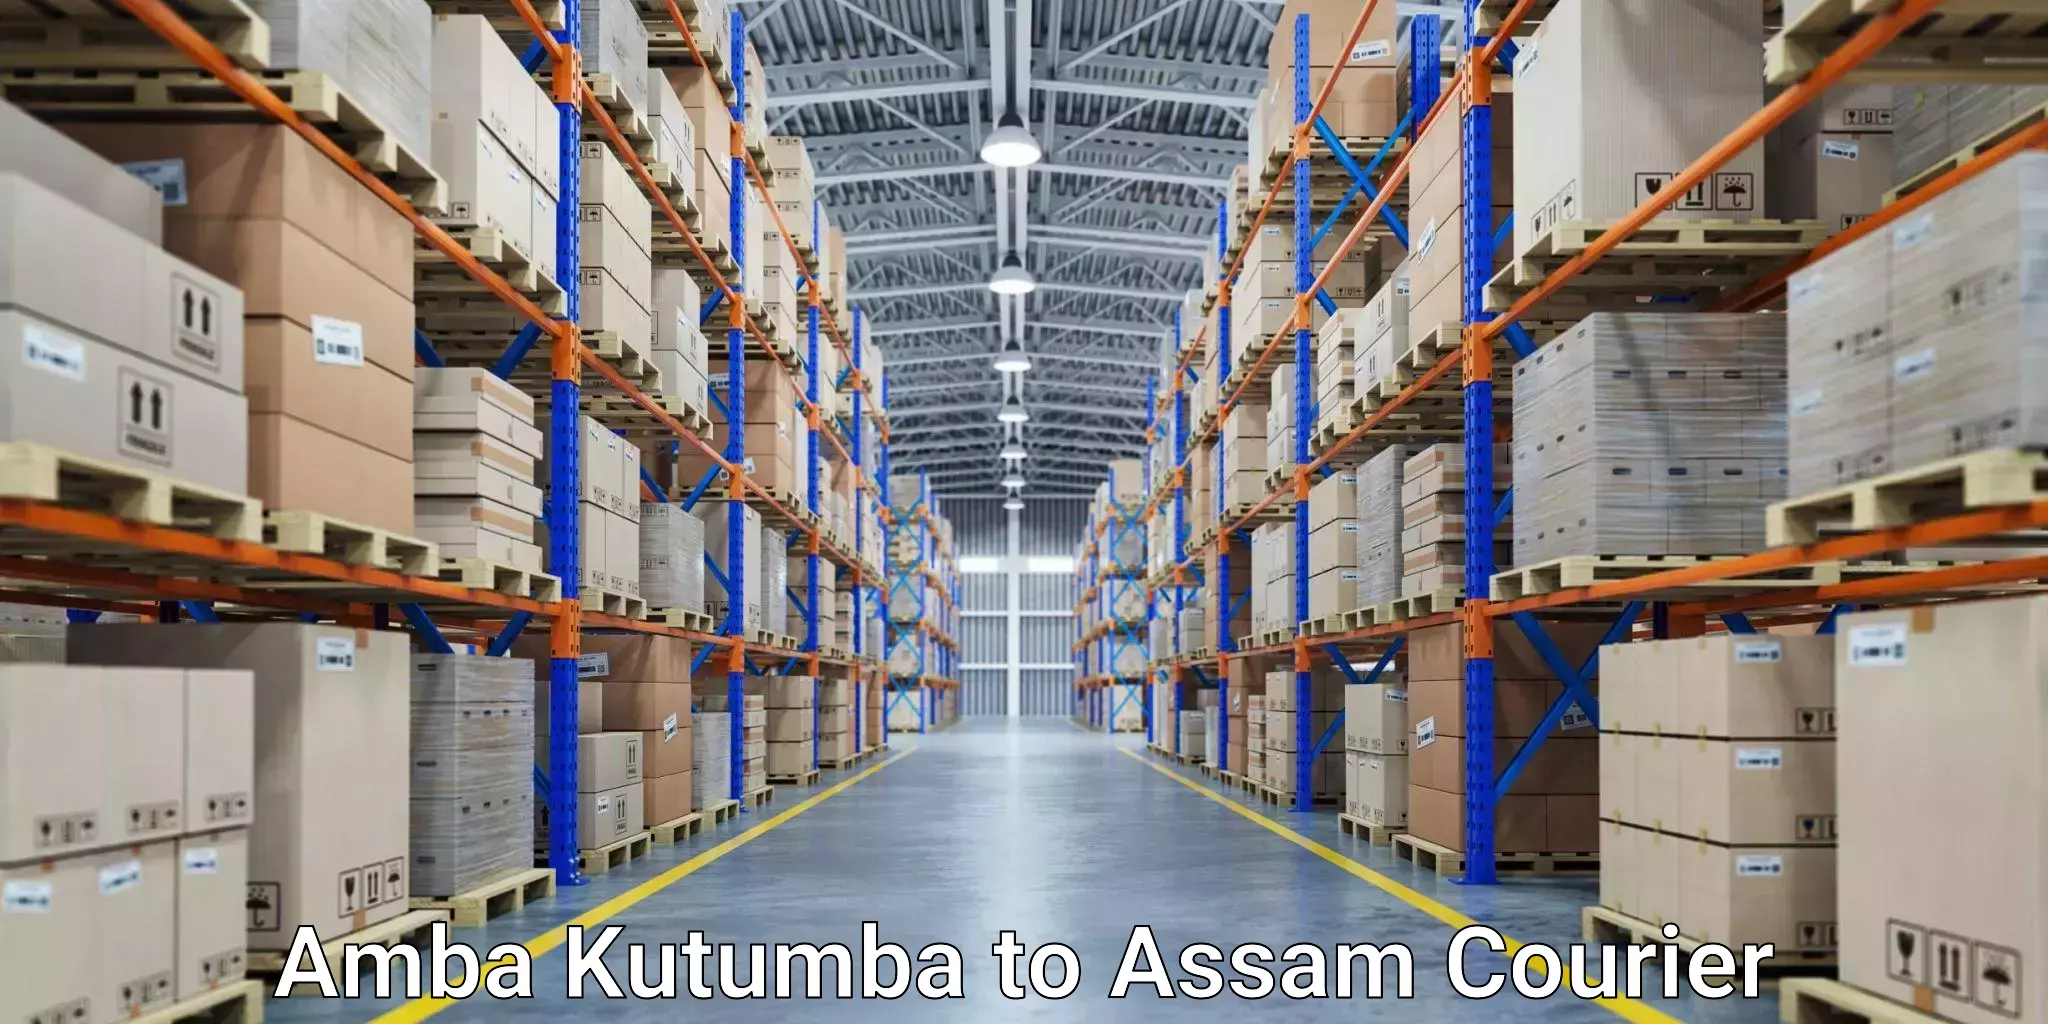 Modern courier technology Amba Kutumba to Assam